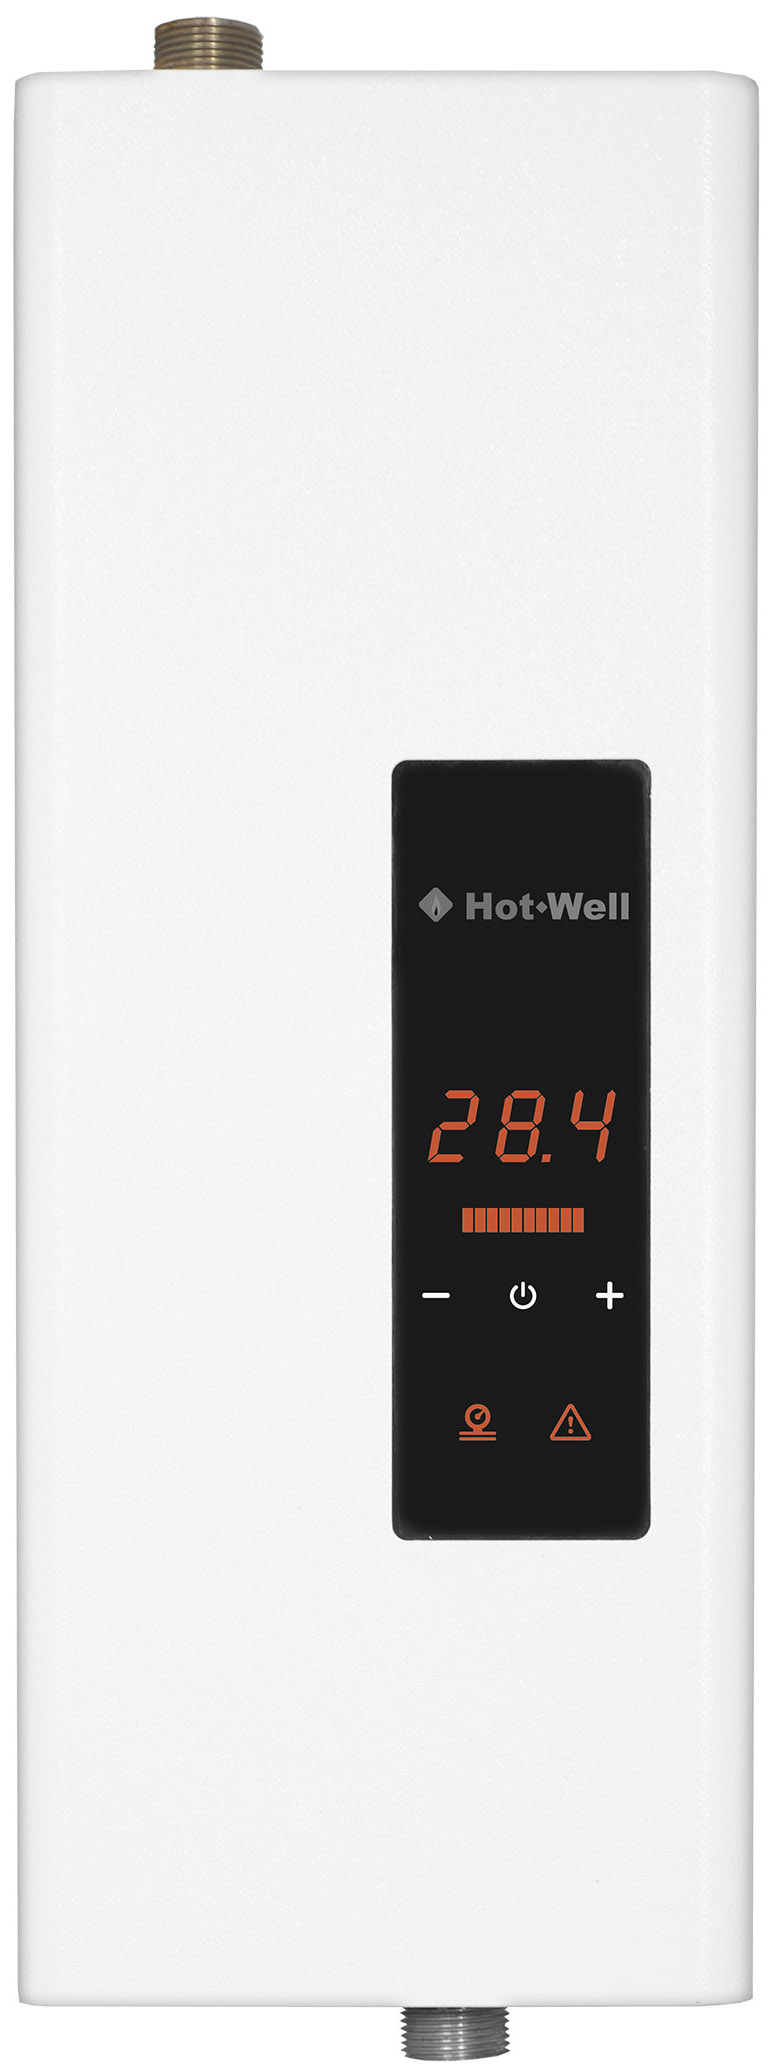 Електричний котел Hot-Well Elektra LUX S 4,5/220 без насоса ціна 0.00 грн - фотографія 2